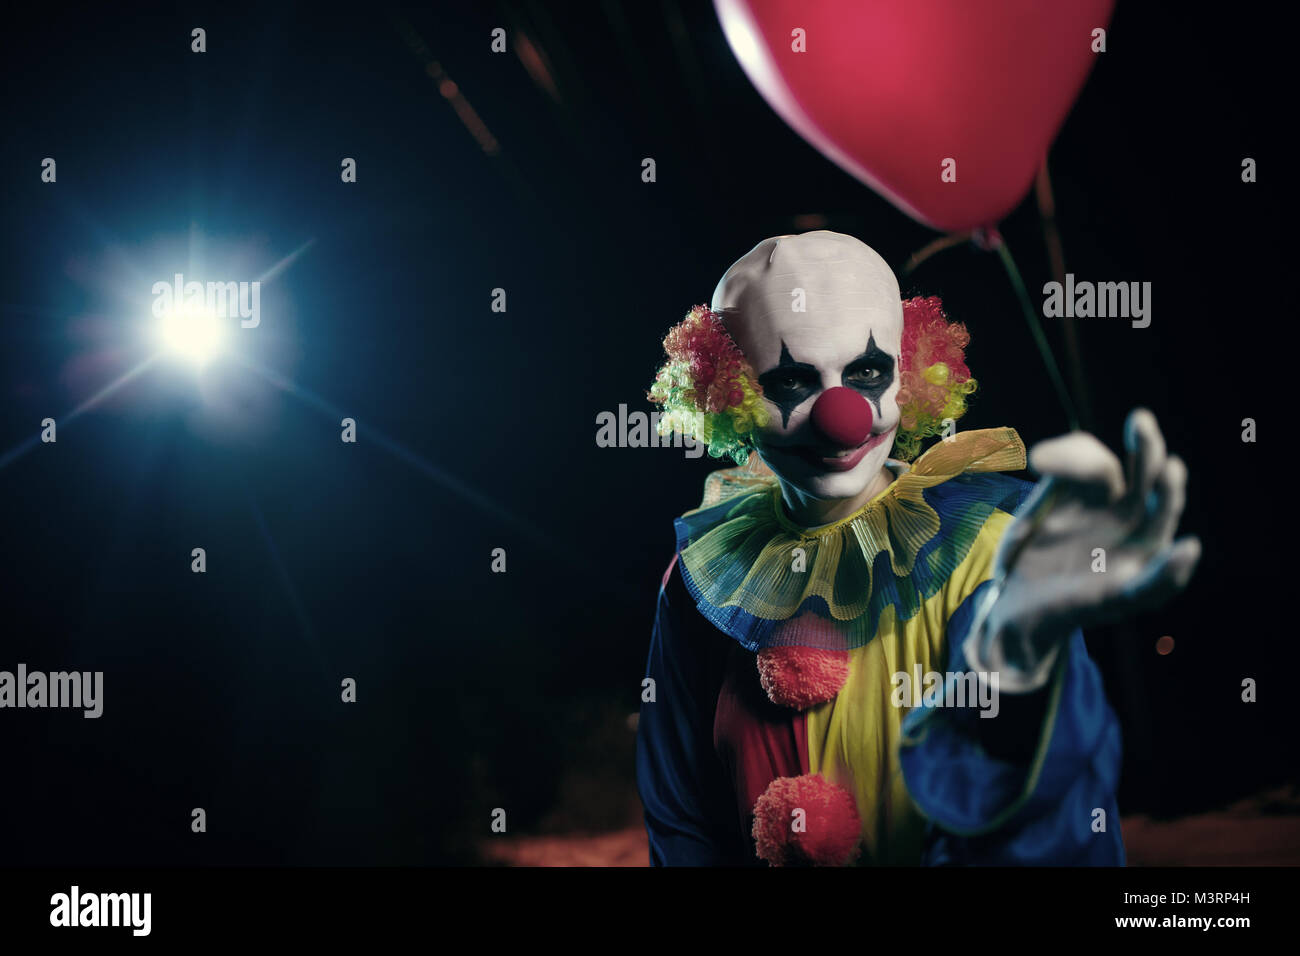 Image de clown avec ballon rouge sur fond de lanterne de gravure Banque D'Images